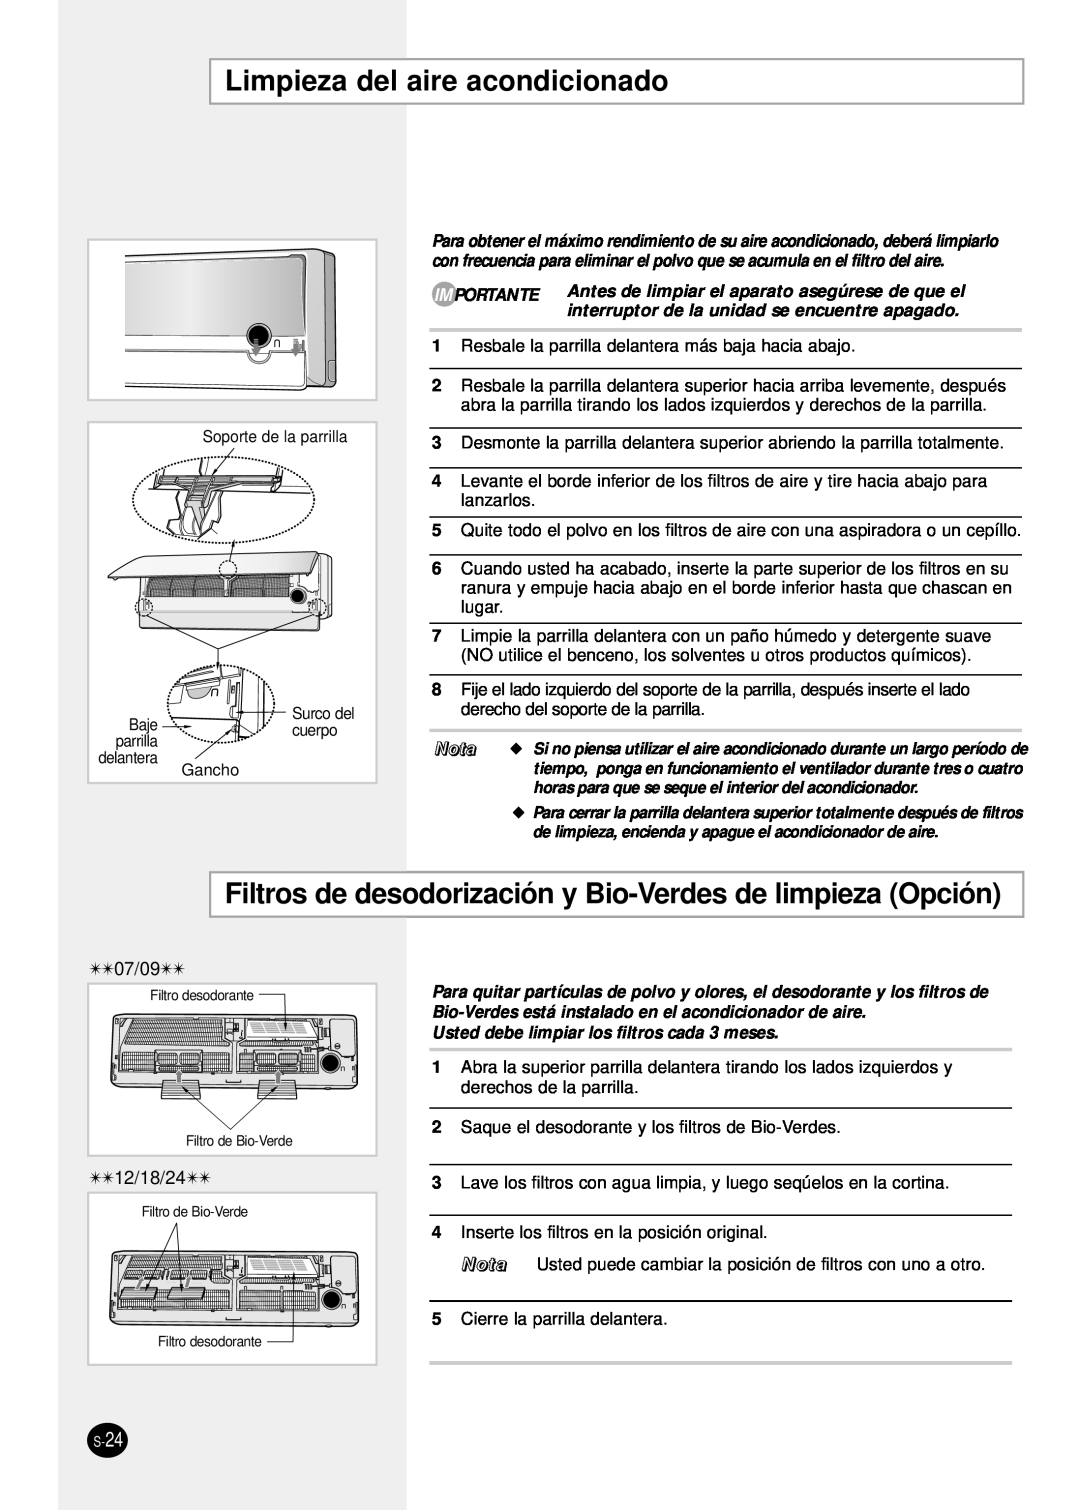 Samsung SH24TP6 manual Limpieza del aire acondicionado, Filtros de desodorización y Bio-Verdes de limpieza Opción, Nota 